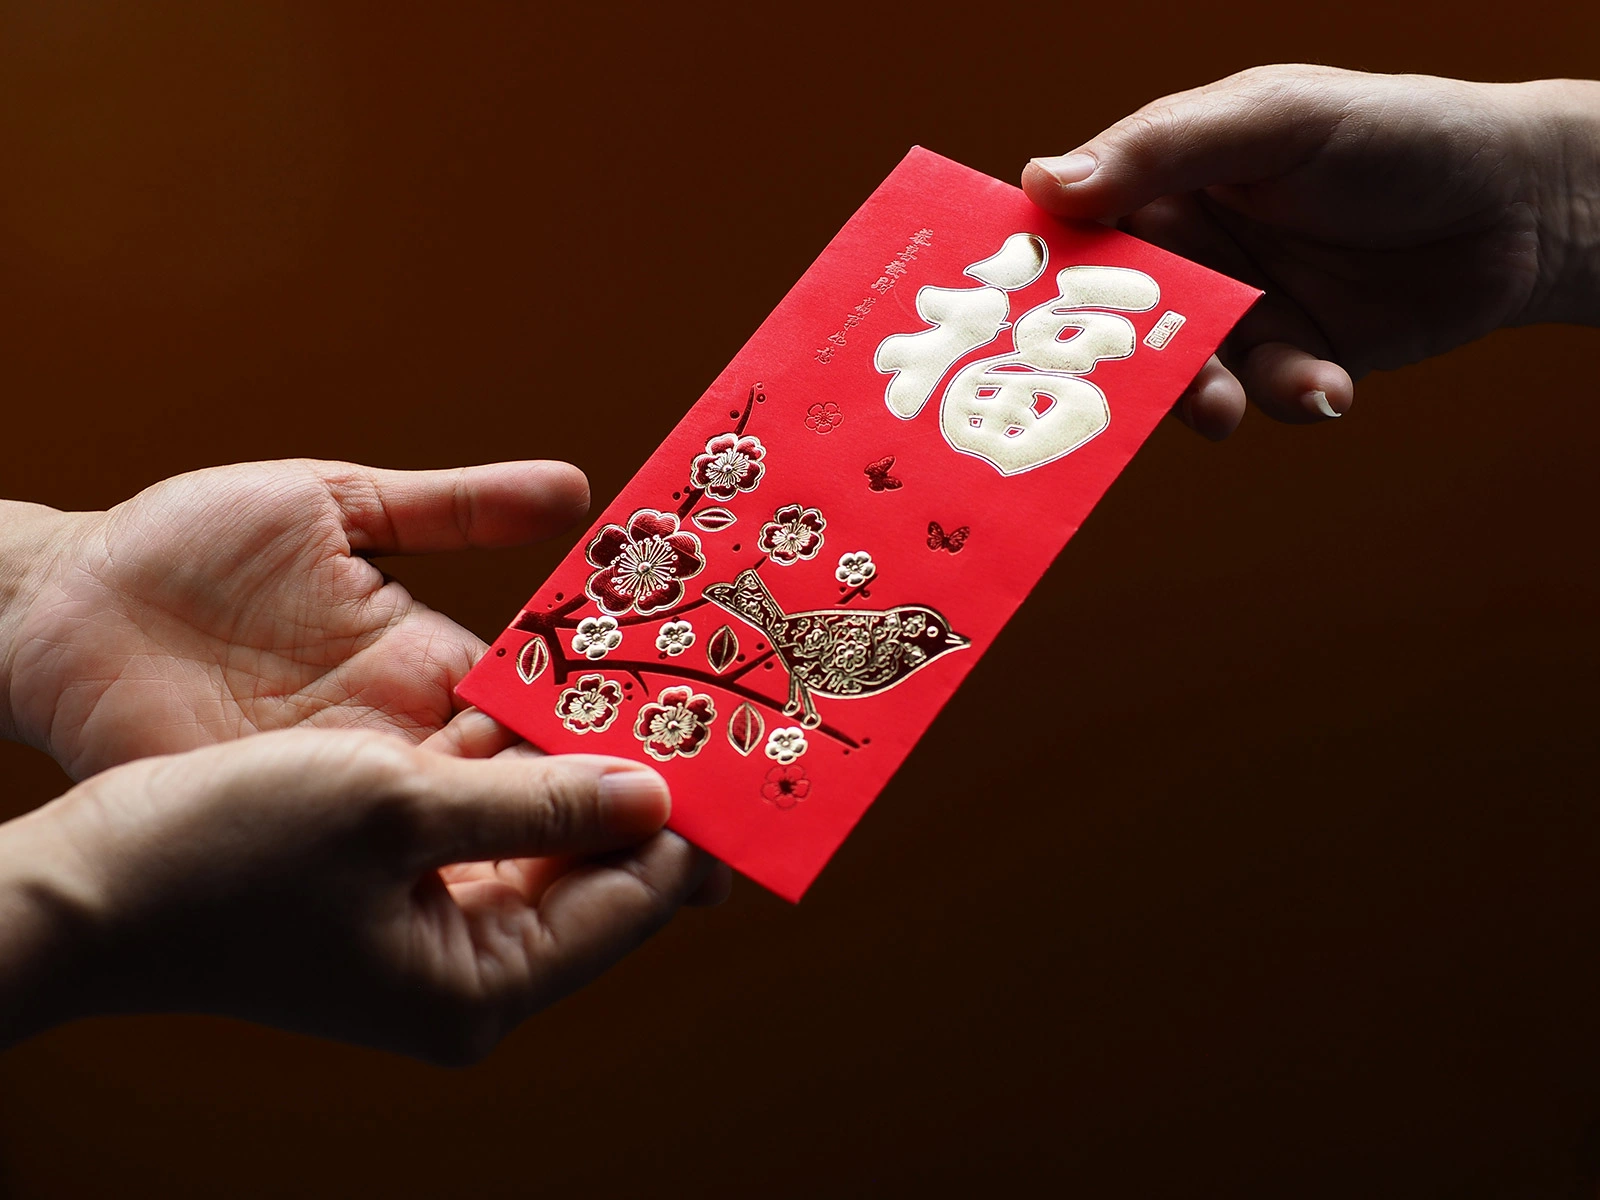 <p>Хунбао &mdash; китайский красный конверт с деньгами</p>

<p></p>